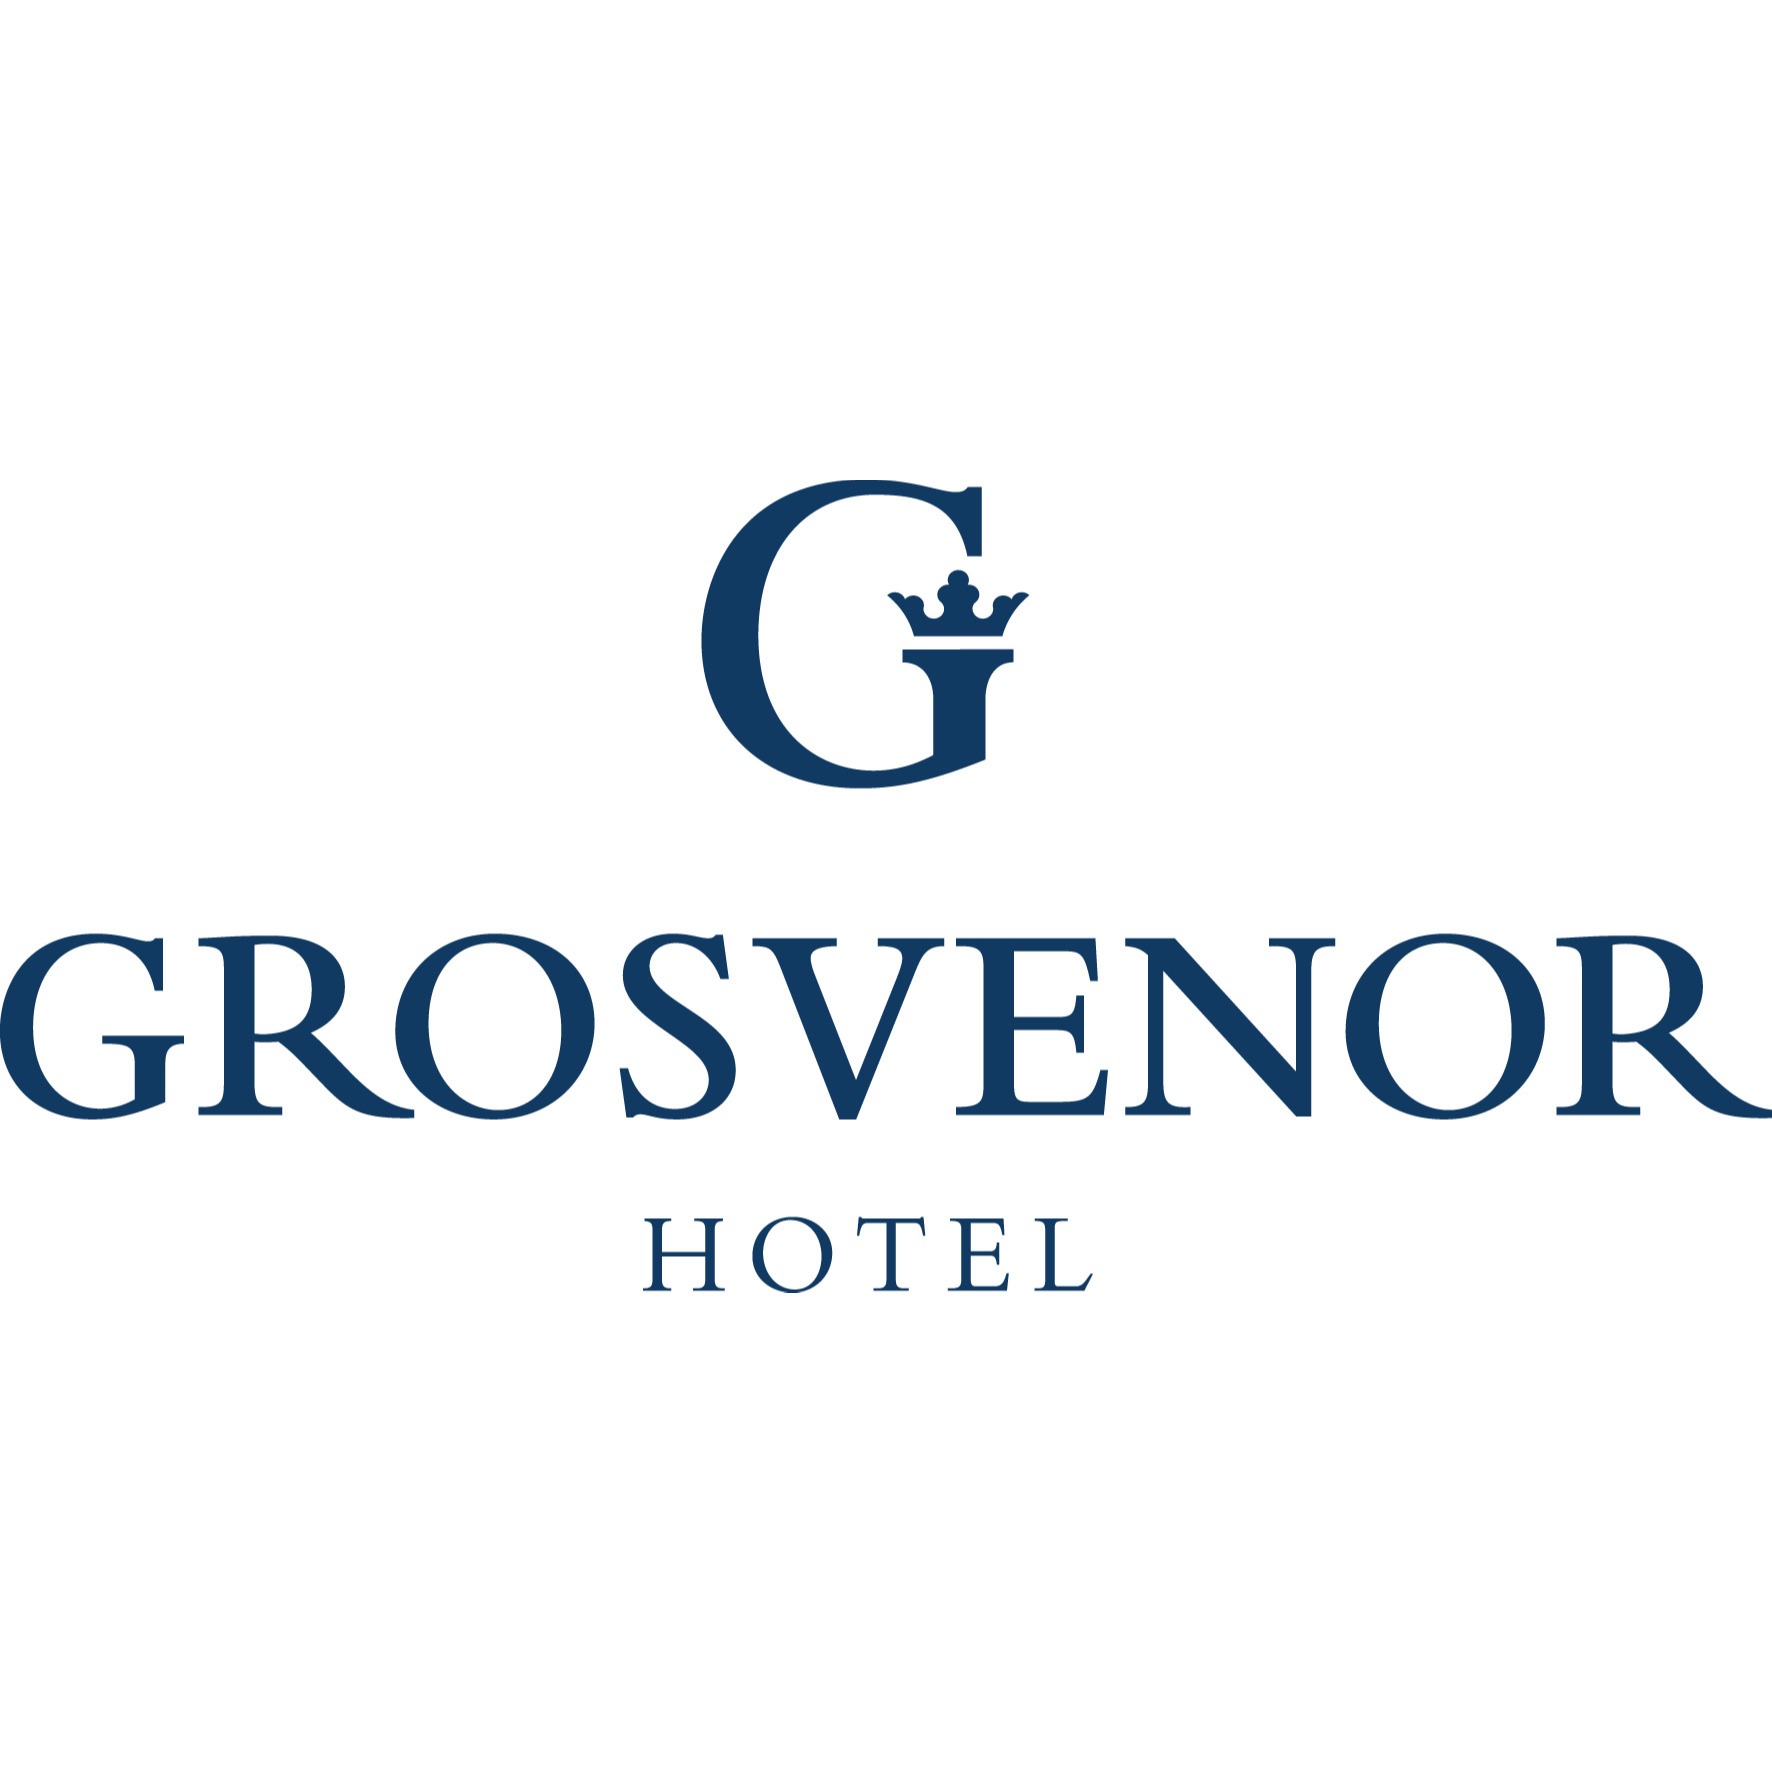 Grosvenor Hotel Adelaide - Adelaide, SA 5000 - (08) 8407 8888 | ShowMeLocal.com